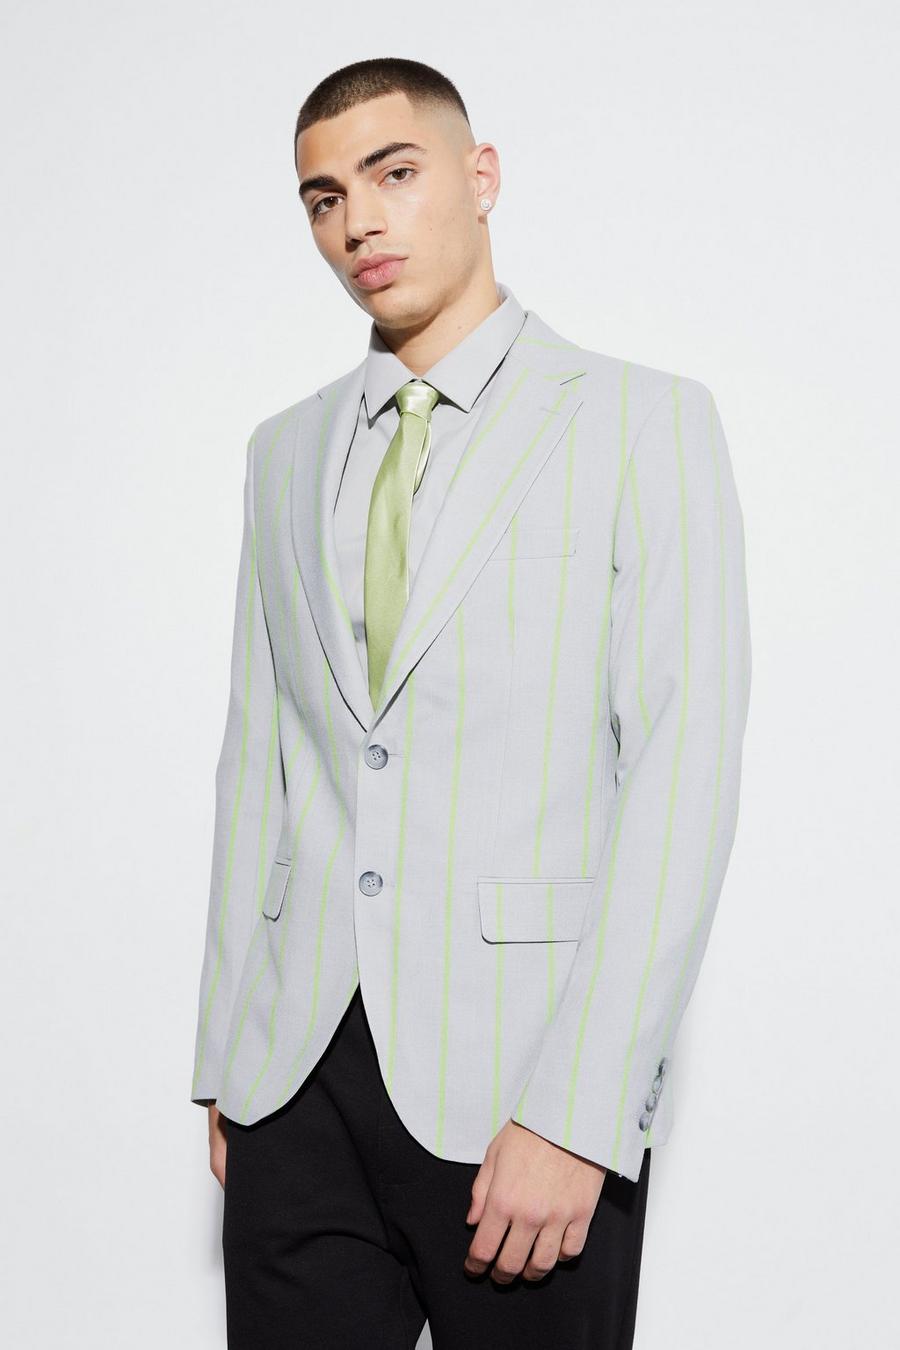 Einreihige Slim-Fit Anzugjacke mit Streifen, Light grey